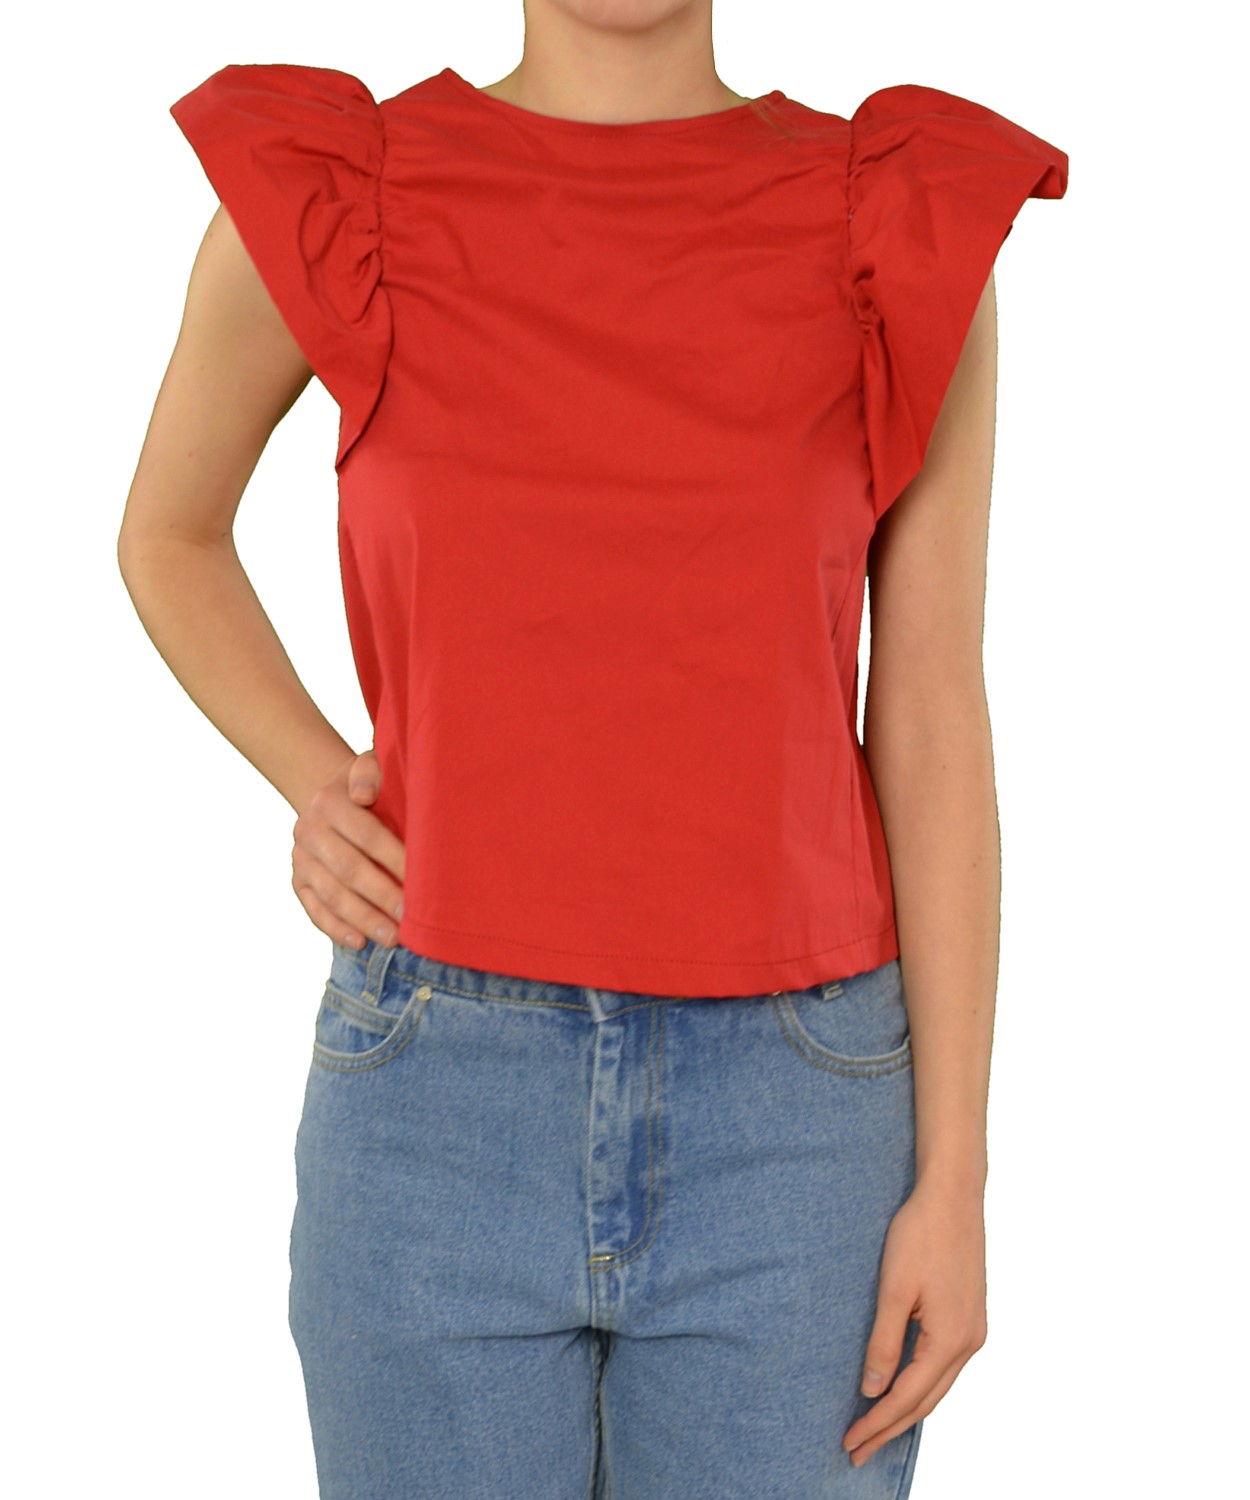 Γυναικεία μπλούζα με βολάν Κόκκινη 31109R